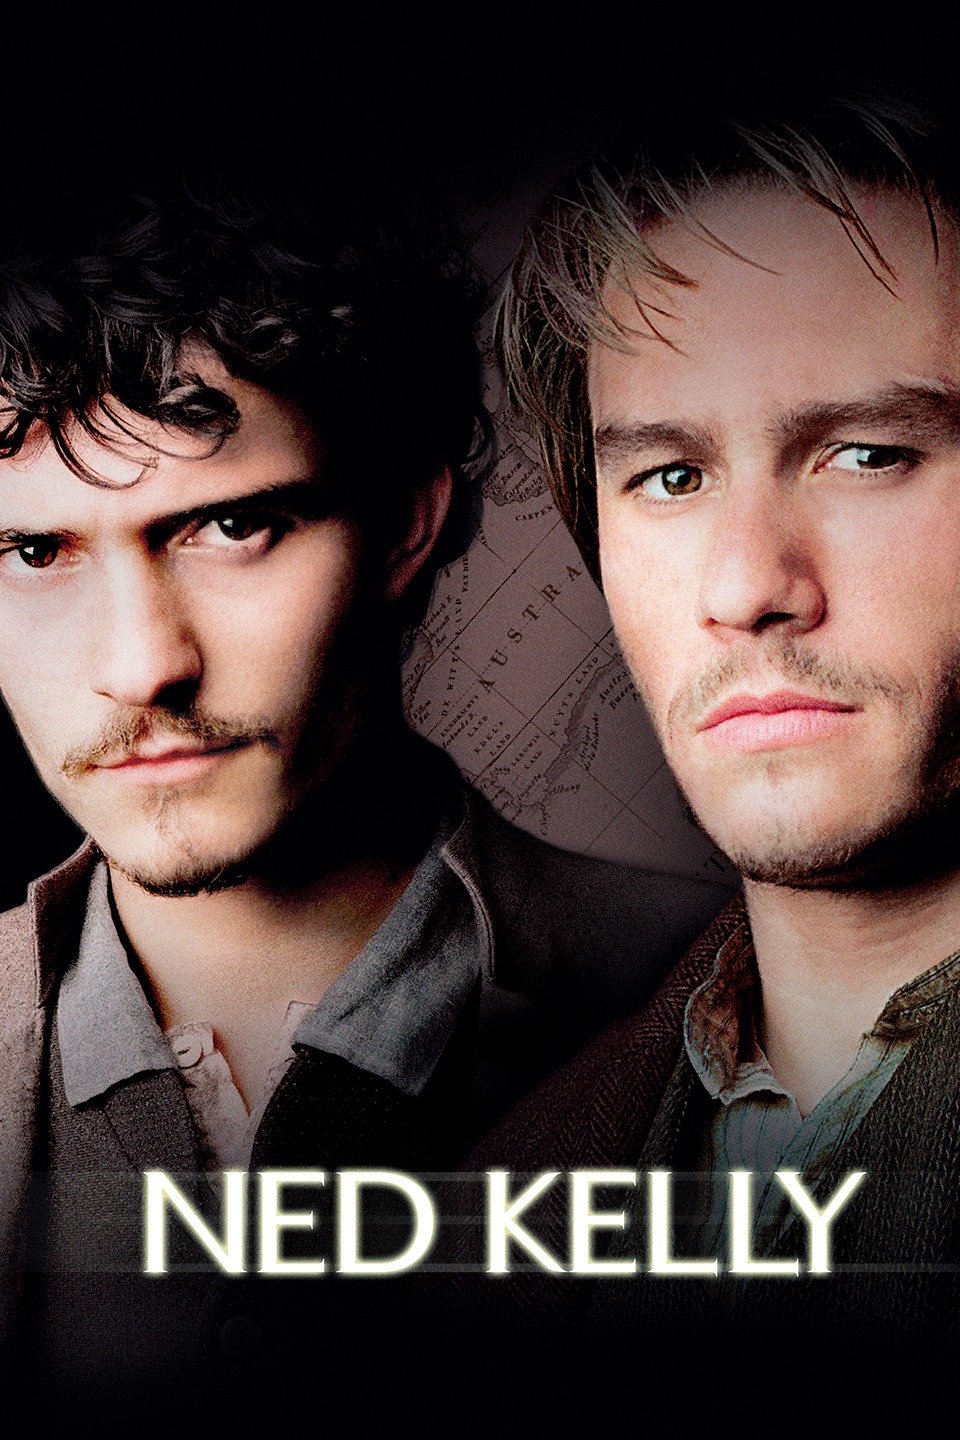 [MINI-HD] Ned Kelly (2003) เน็ด เคลลี่…วีรบุรุษแดนเถื่อน [1080p] [พากย์ไทย 5.1 + อังกฤษ DTS] [บรรยายไทย + อังกฤษ] [เสียงไทย + ซับไทย] [ONE2UP]